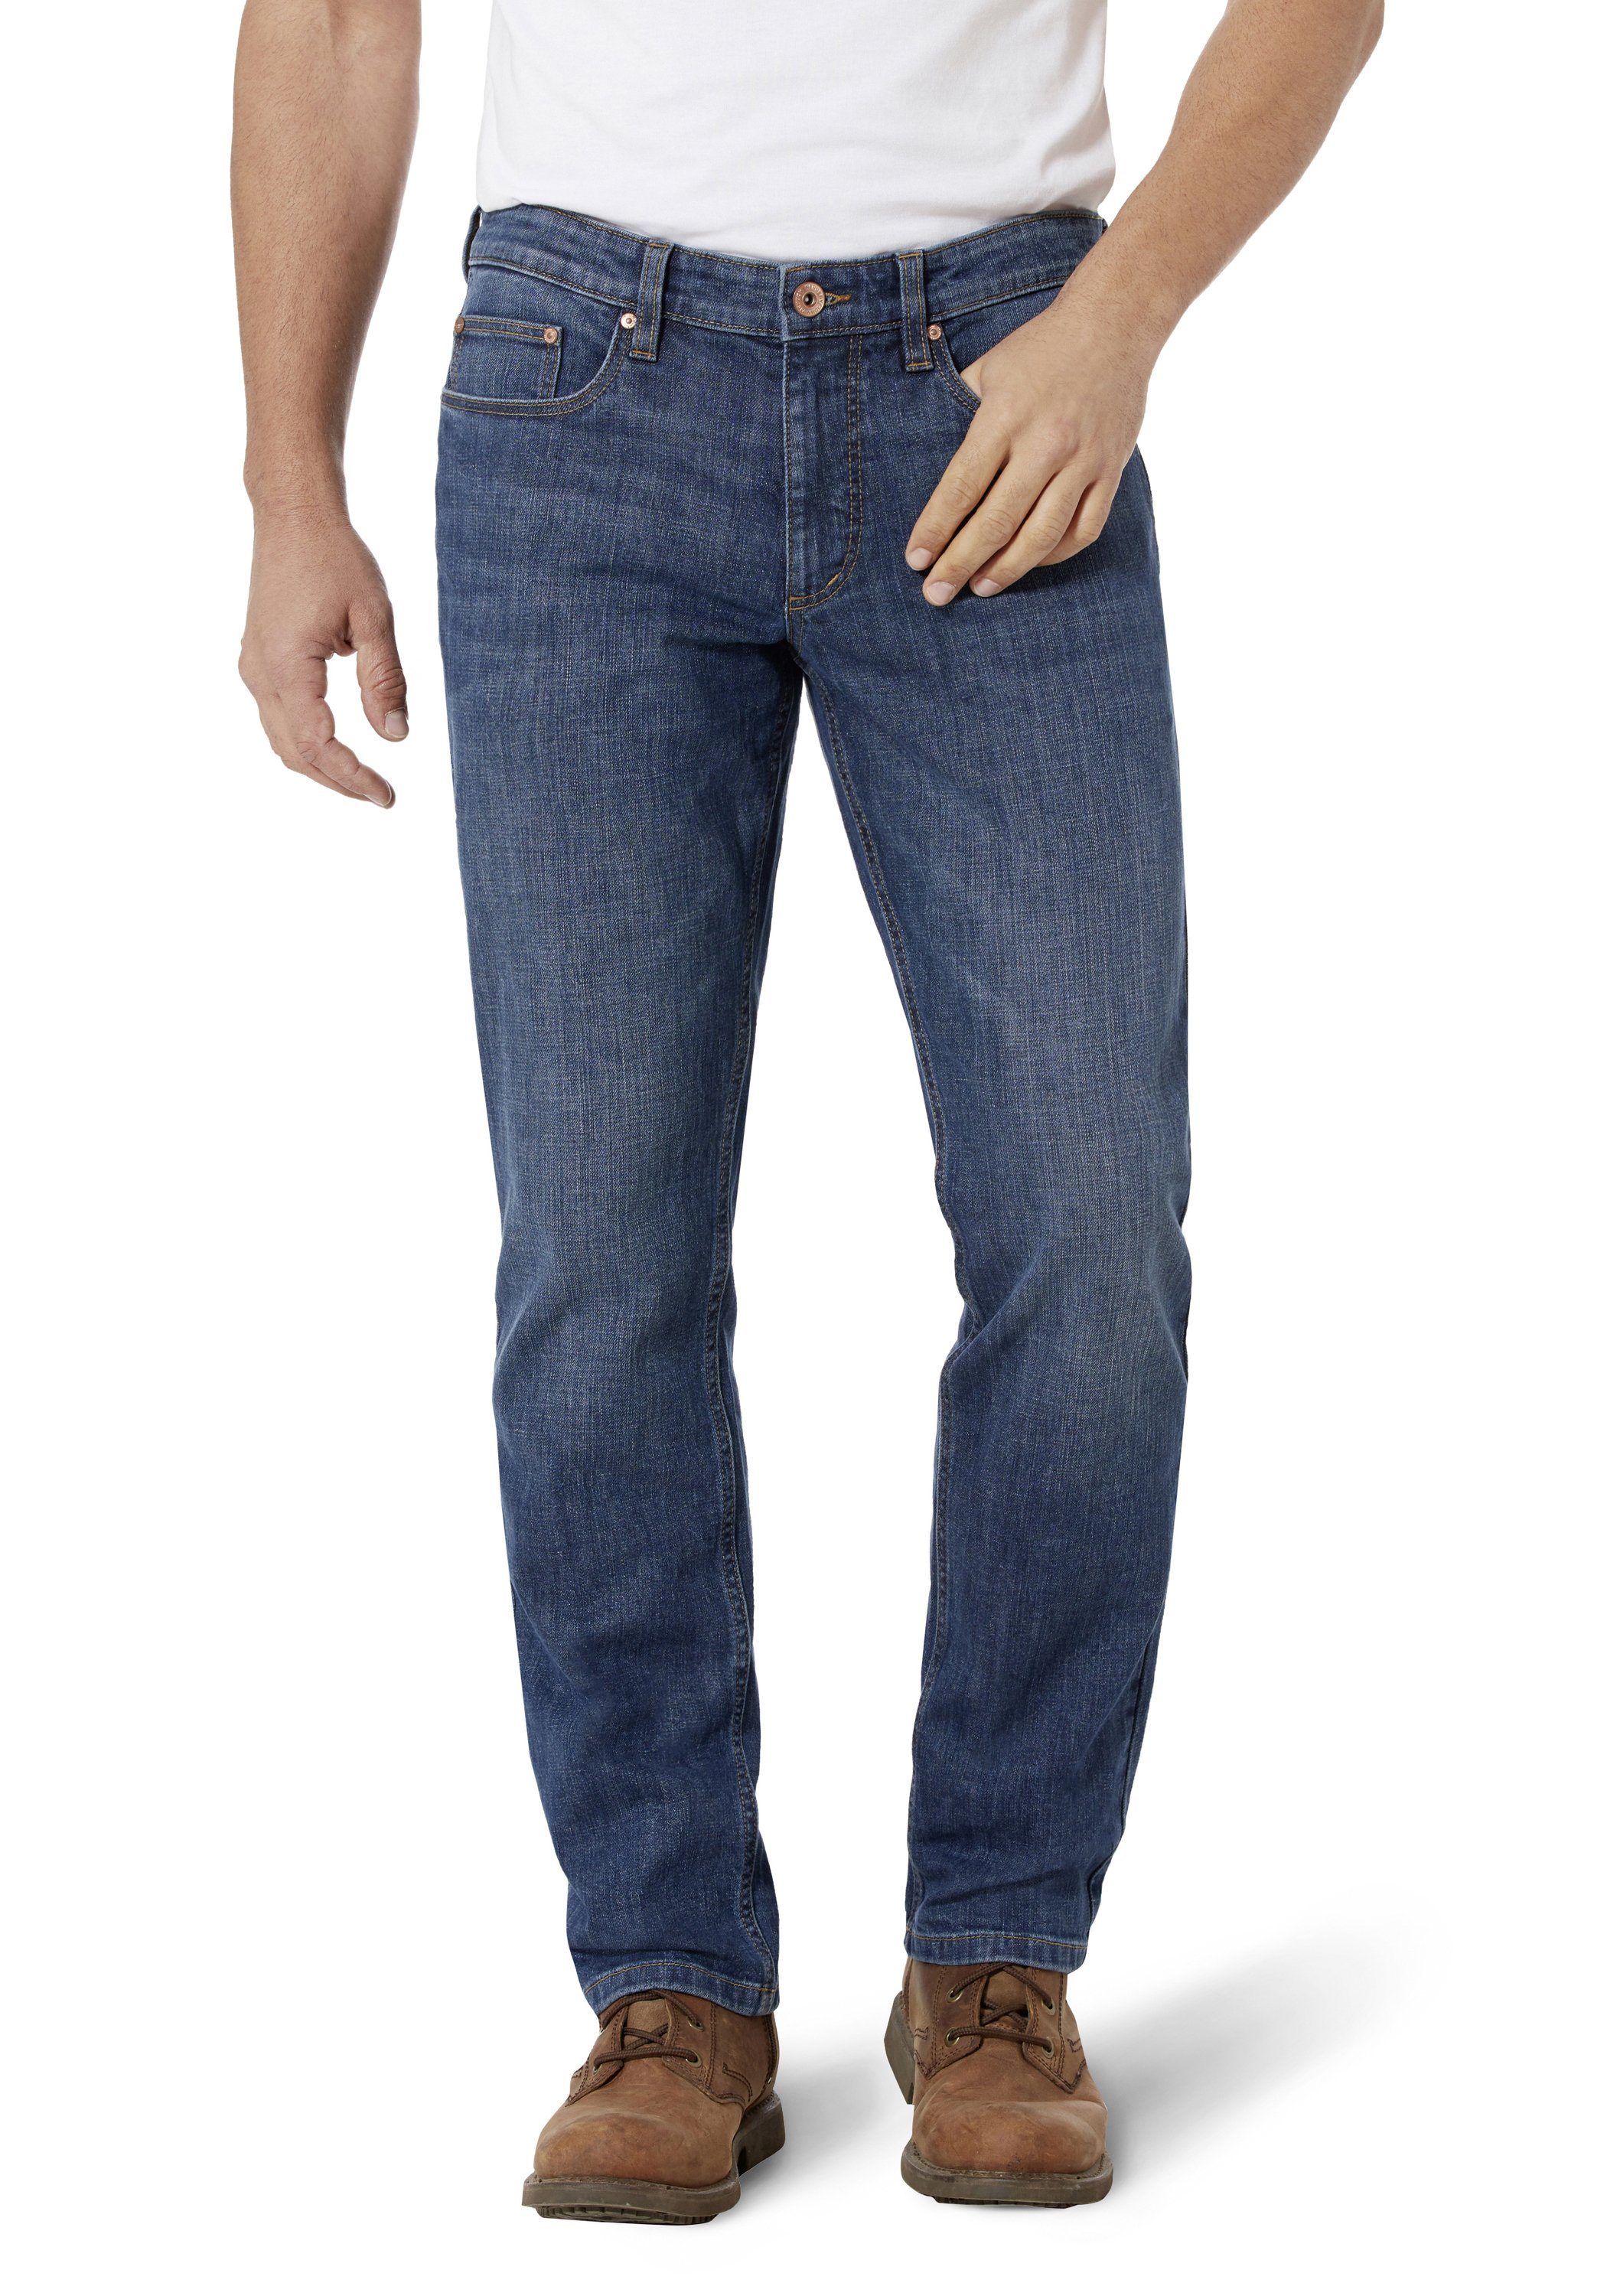 HERO by 5-Pocket-Jeans Medoox used midblue Denver Stretch Regular Straight John